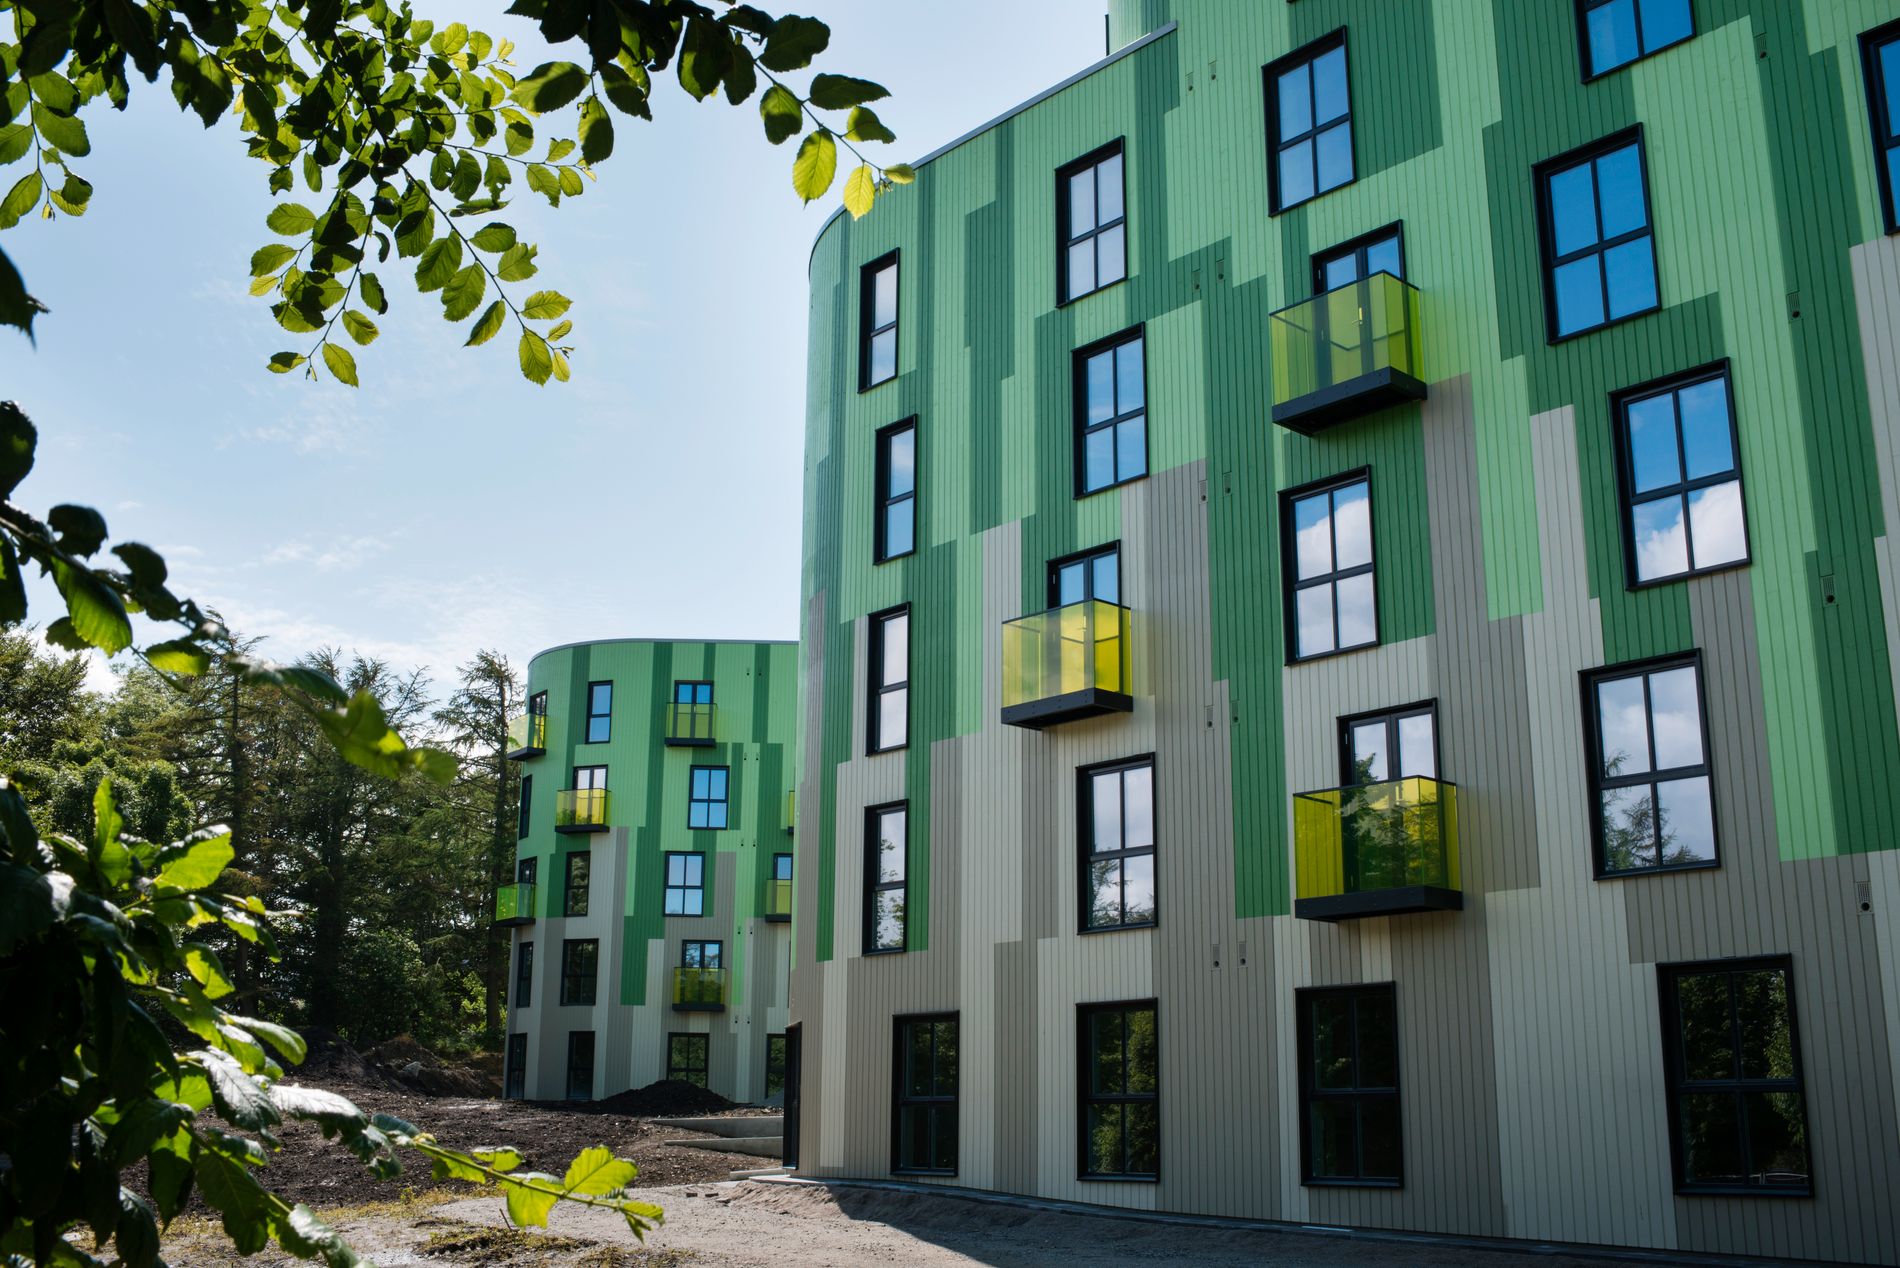 Det er fem år siden sist SiS fikk nye studentboliger, da i Sandnes og her på Bjergsted. 160 nye boliger stå klare til studiestart på Gosenmyra på Ullandhaug. 